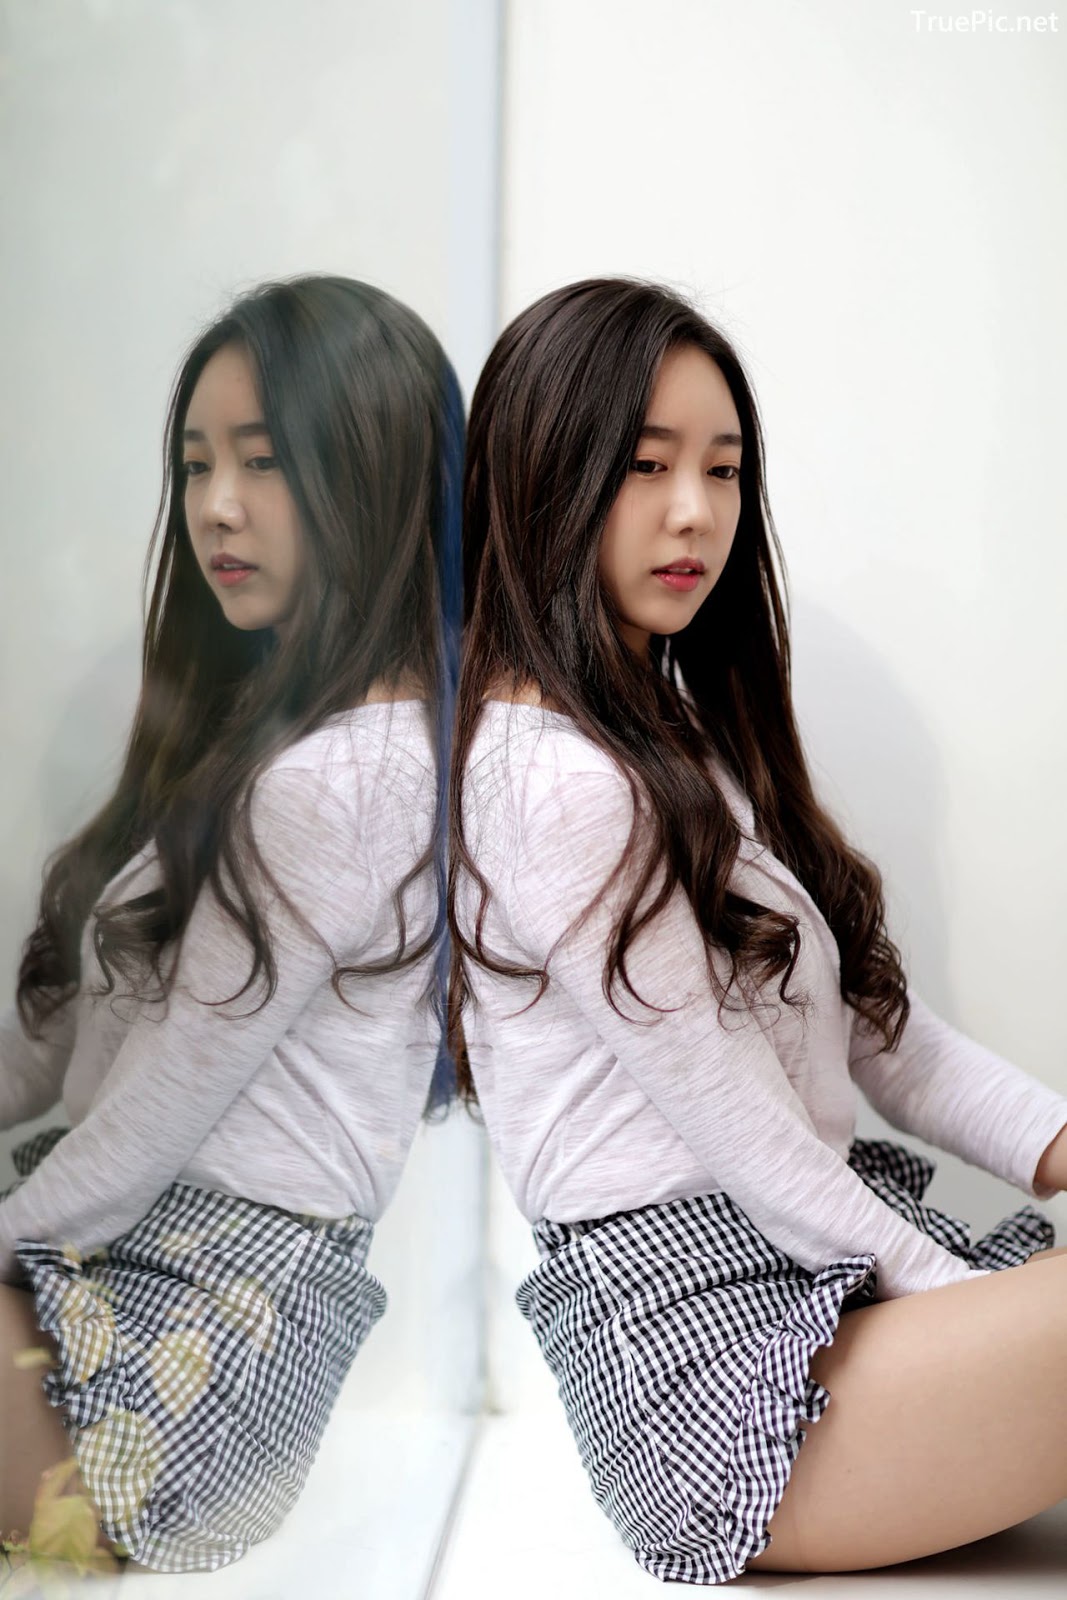 Image-Korean-Hot-Model-Go-Eun-Yang-Indoor-Photoshoot-Collection-TruePic.net- Picture-94